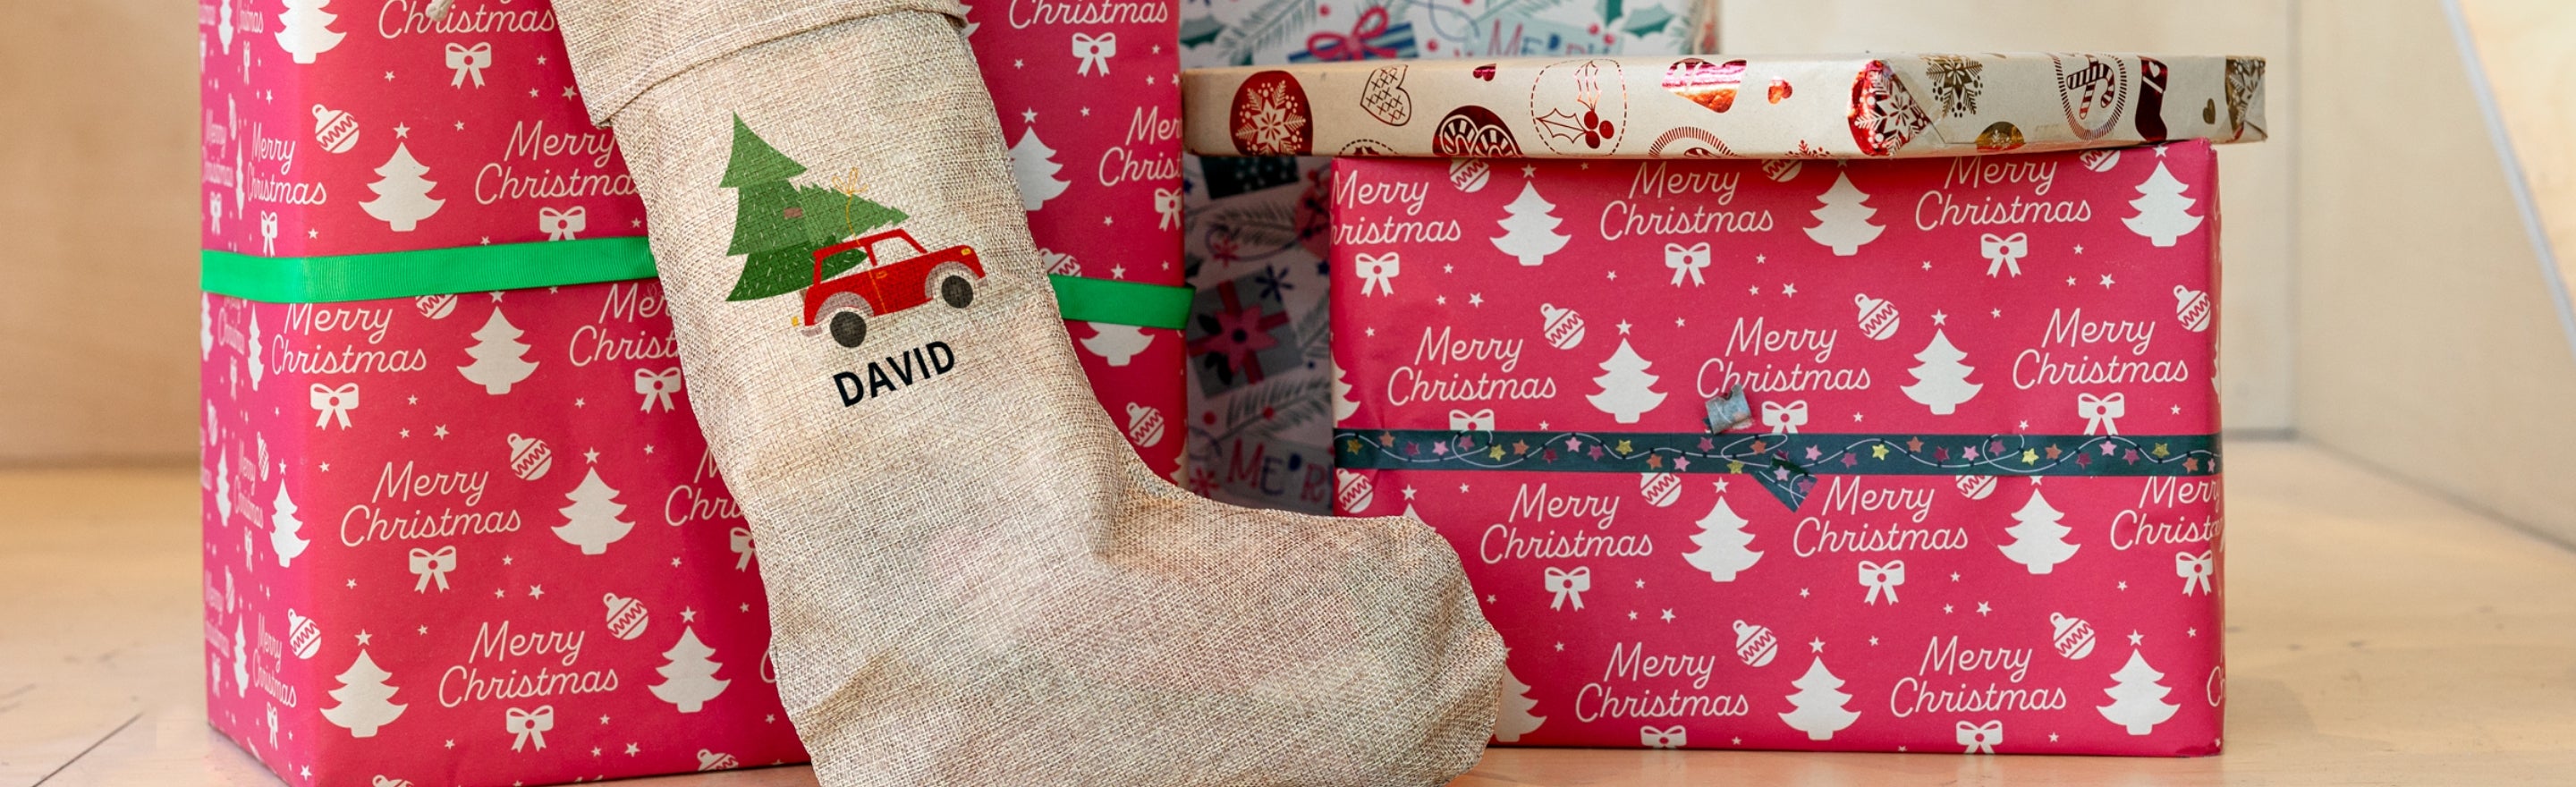 Emballage de cadeaux de Noël : 5 idées pour être original.e cette année

